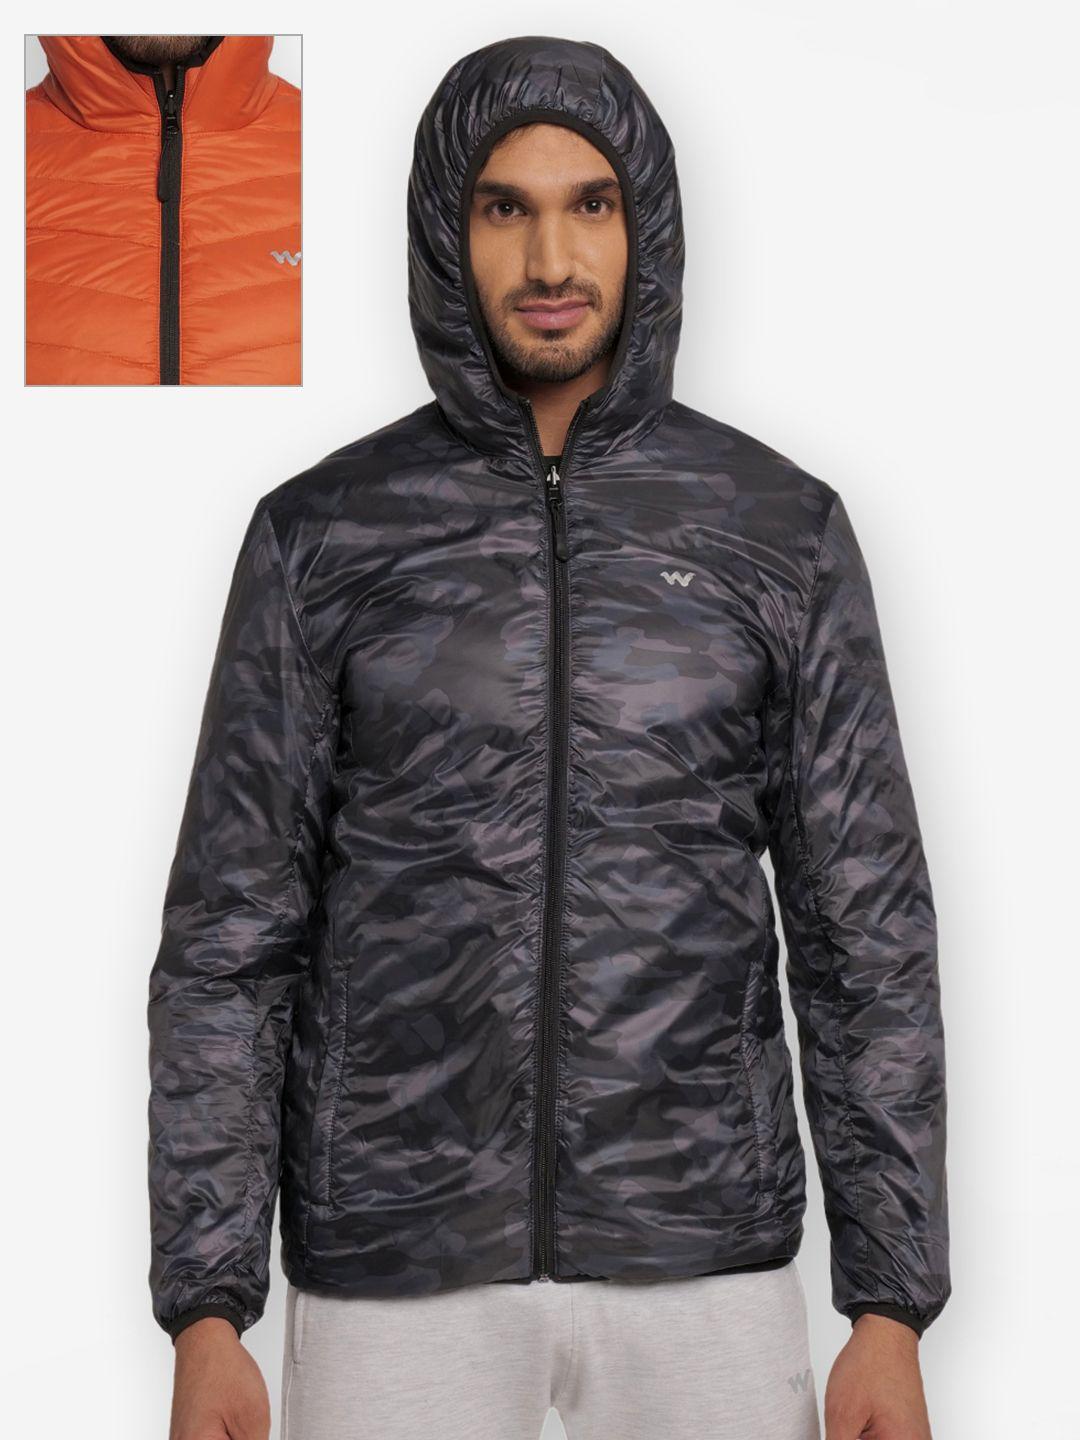 wildcraft men orange black camouflage water resistant outdoor quilted jacket